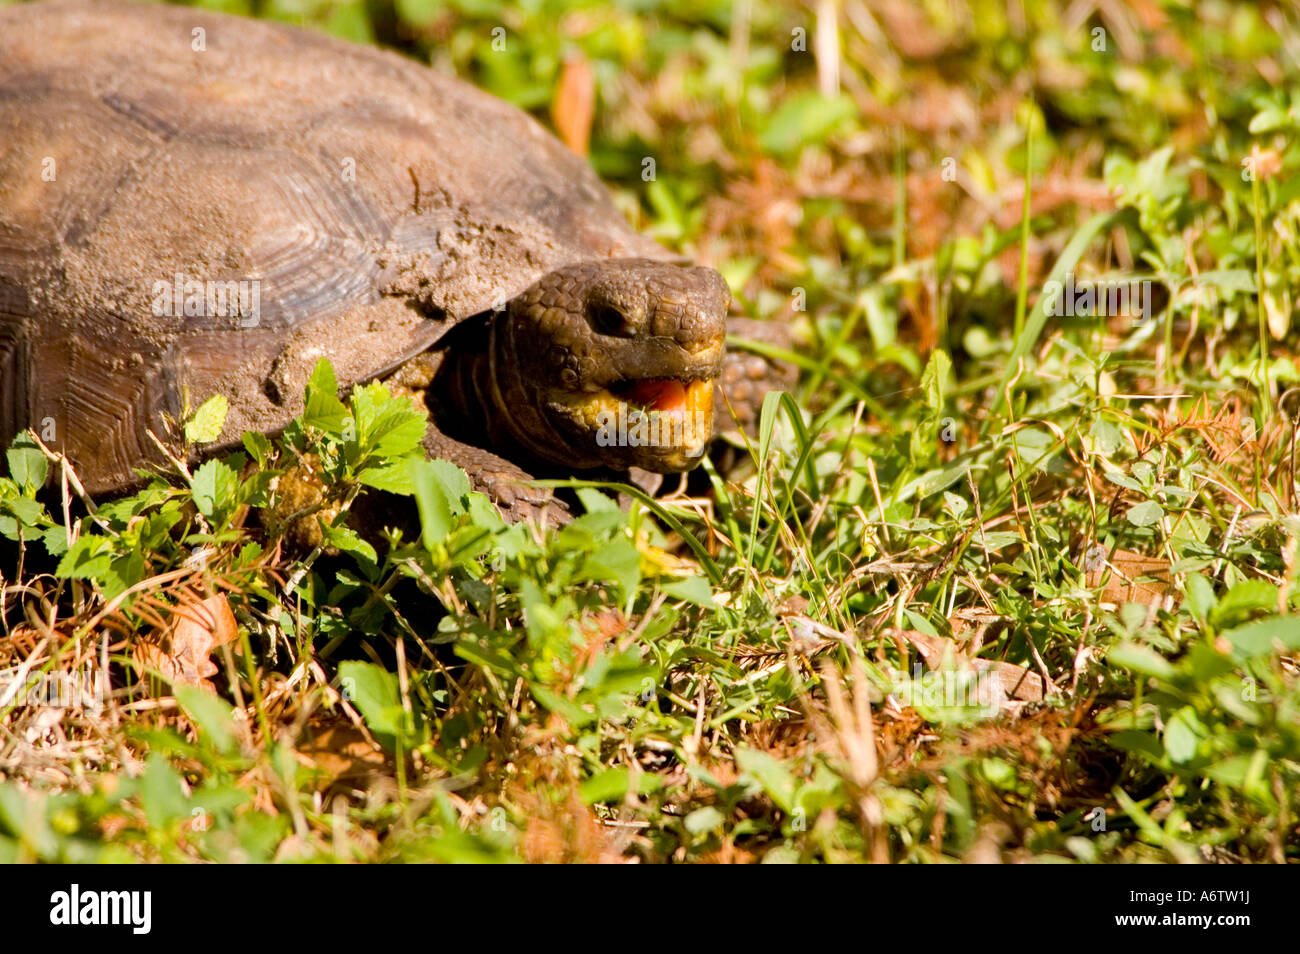 Gopher-Schildkröte füttern offenem Mund fl Natur Tierwelt Florida Vogelbeobachtung Stockfoto